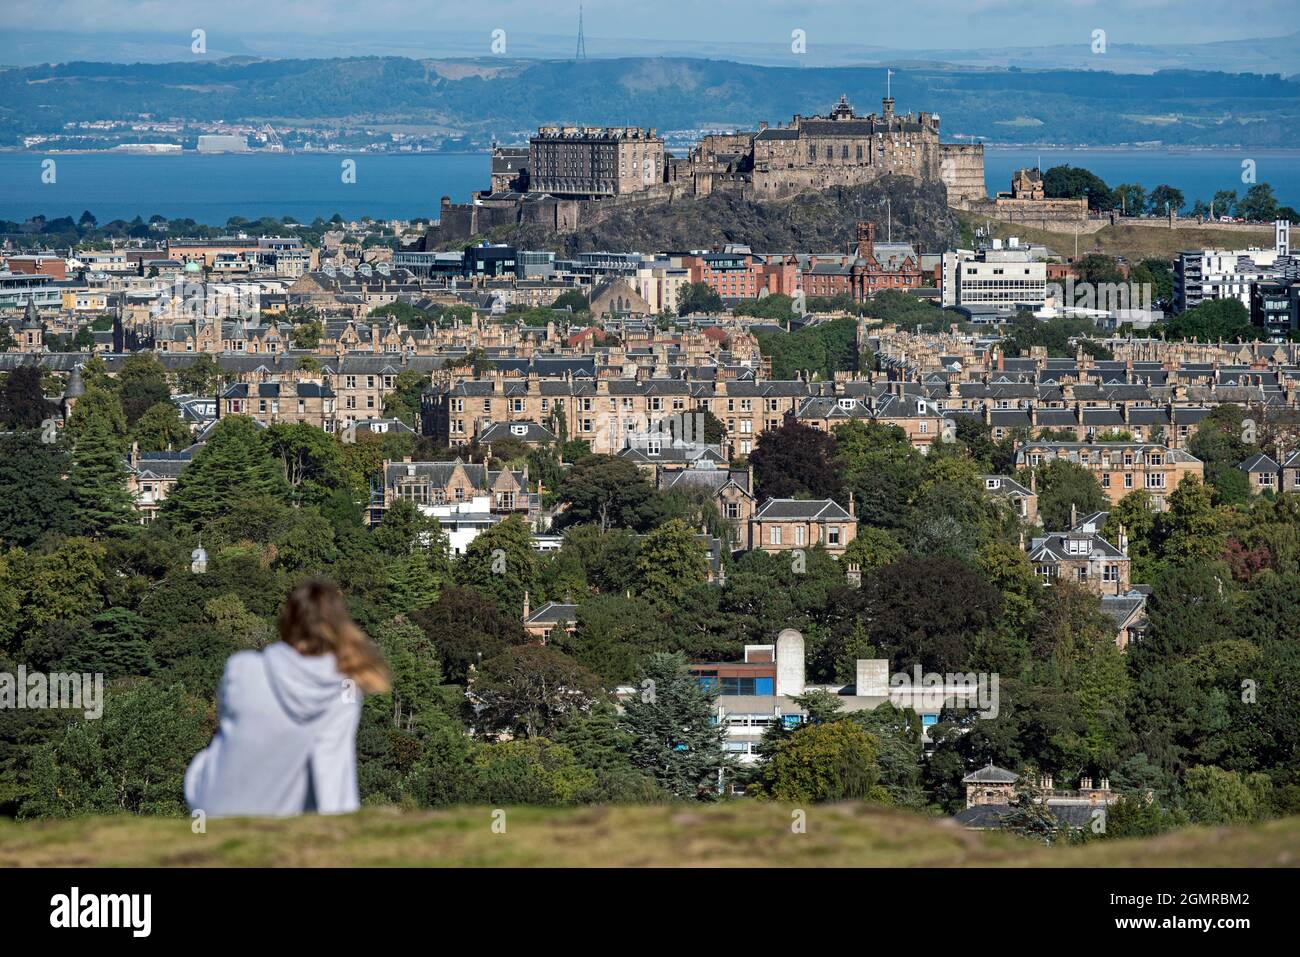 Blick auf das Edinburgh Castle mit einer unscharf dargestellten Figur im Vordergrund, aufgenommen von Blackford Hill, Edinburgh, Schottland, Großbritannien. Stockfoto